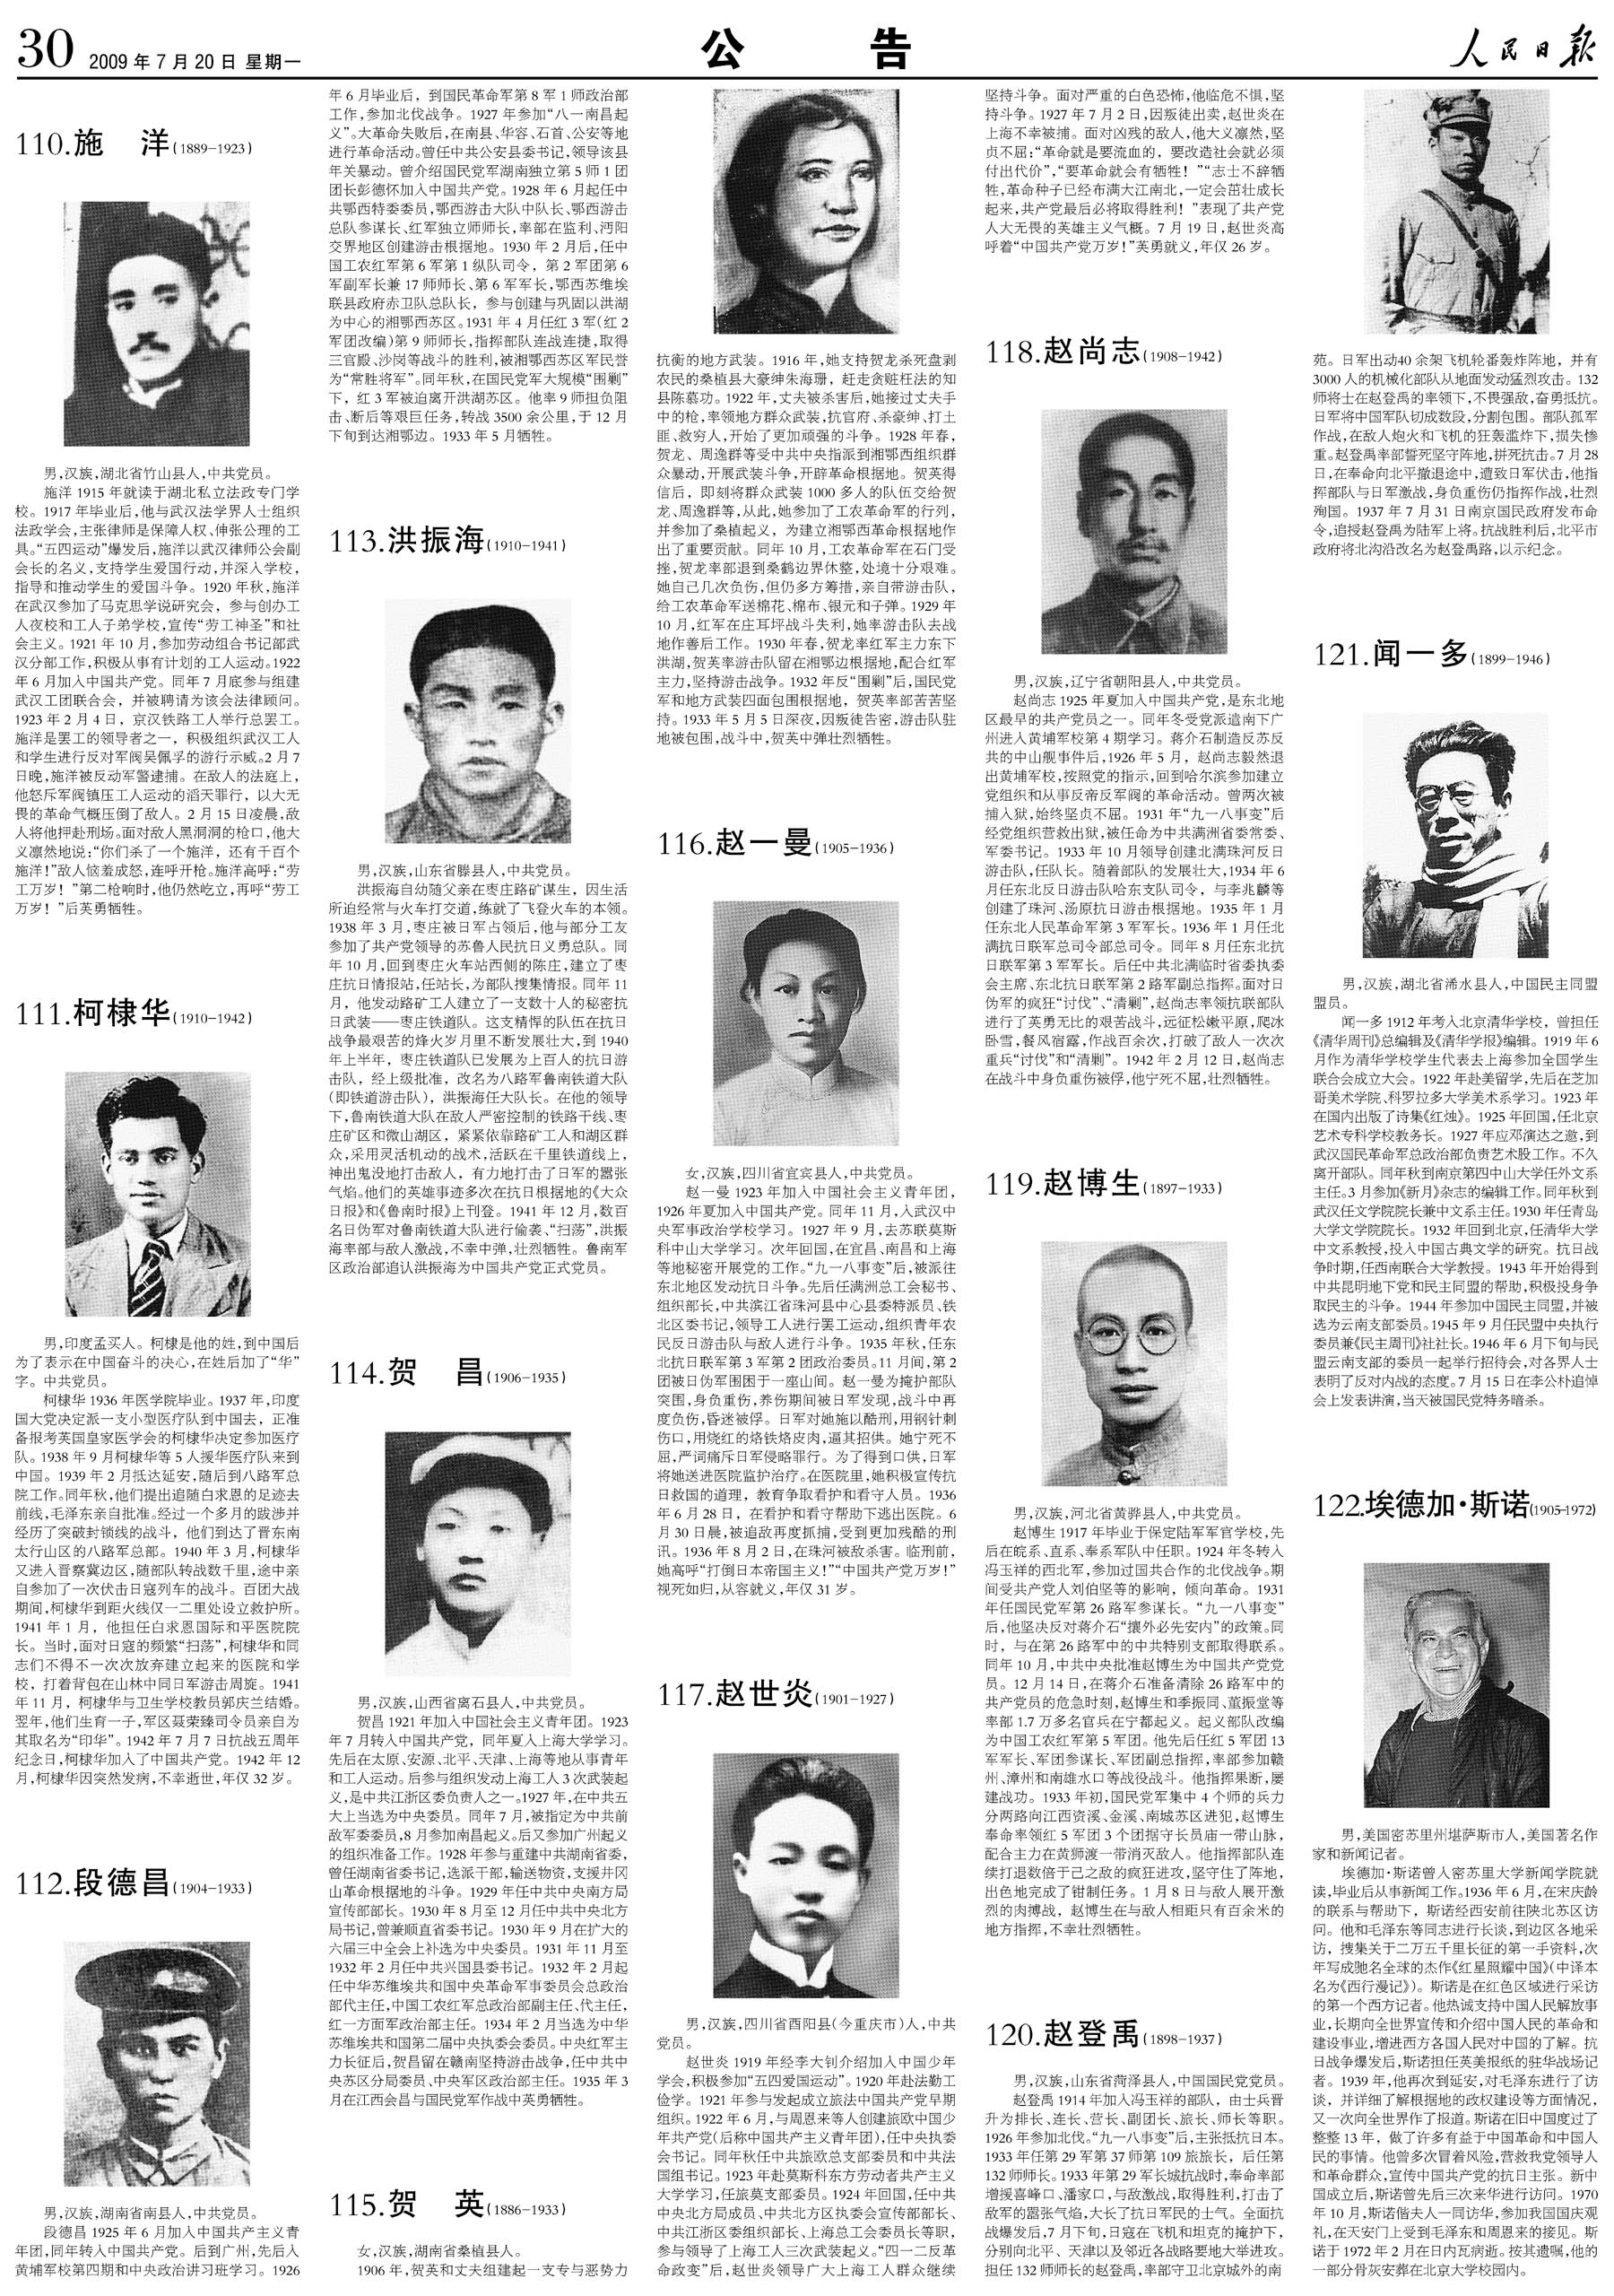 100位为新中国成立作出突出贡献的英雄模范人物和 100位新中国成立